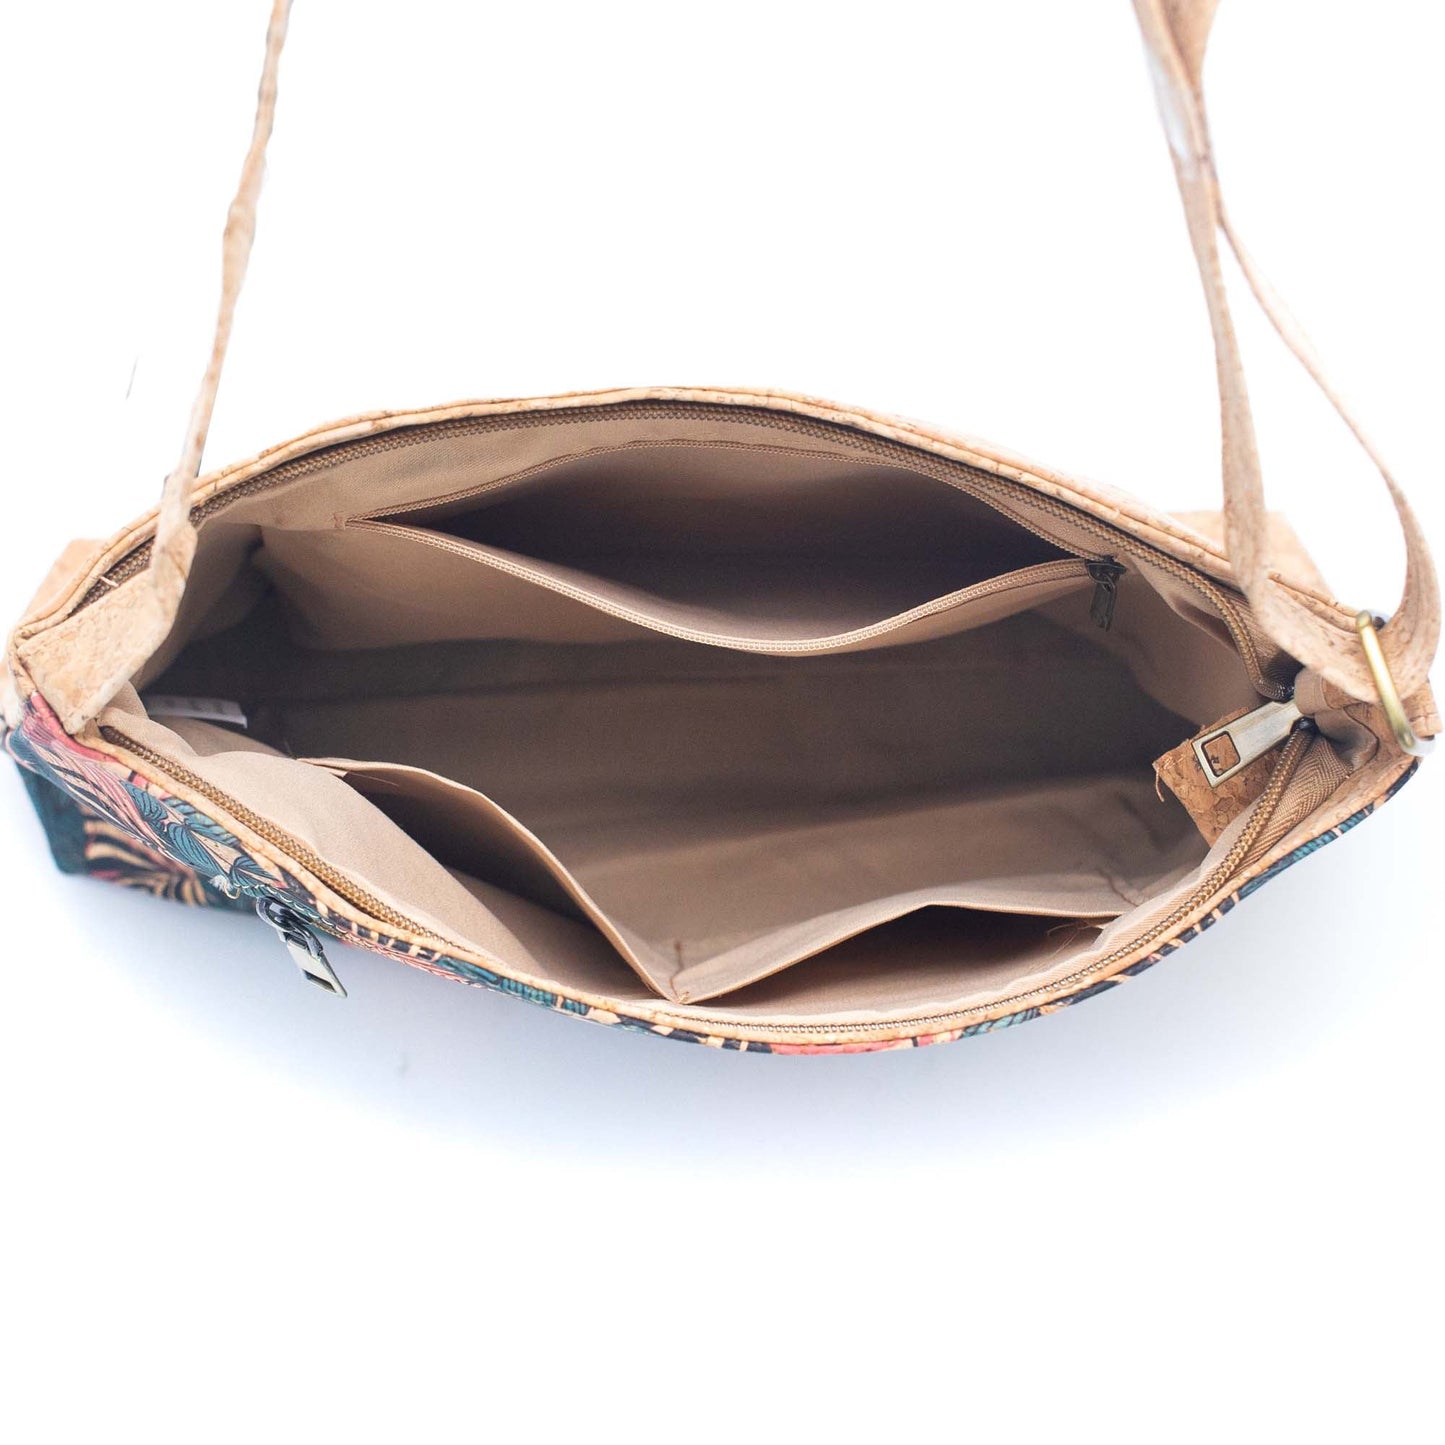 Natural Cork Shoulder Bag w/ Front Zipper Pocket | THE CORK COLLECTION